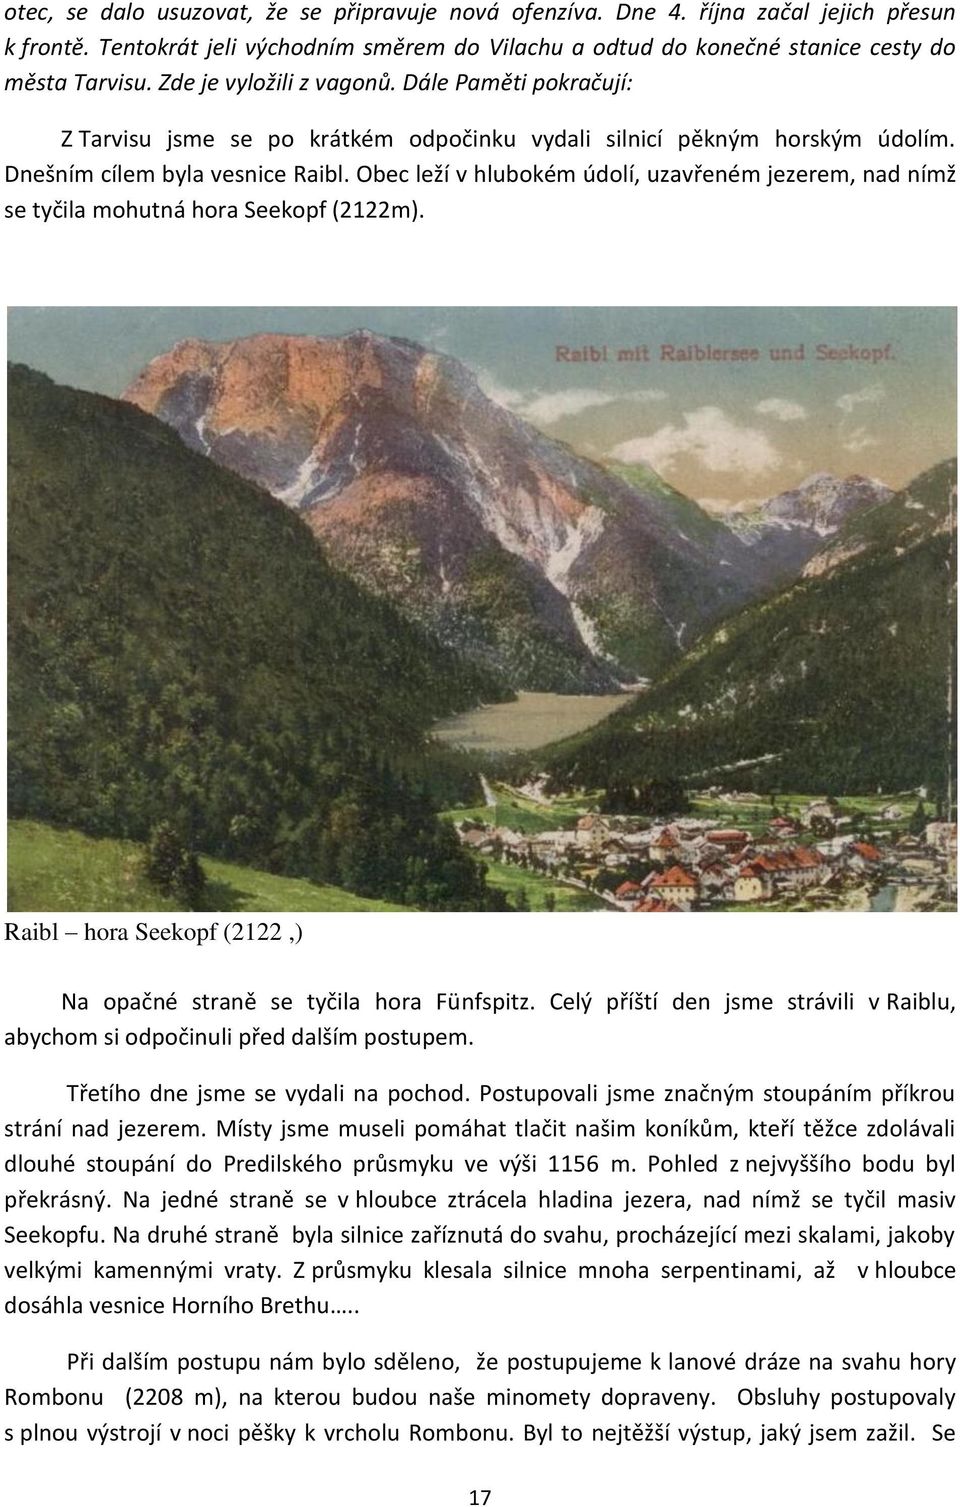 Obec leží v hlubokém údolí, uzavřeném jezerem, nad nímž se tyčila mohutná hora Seekopf (2122m). Raibl hora Seekopf (2122,) Na opačné straně se tyčila hora Fünfspitz.